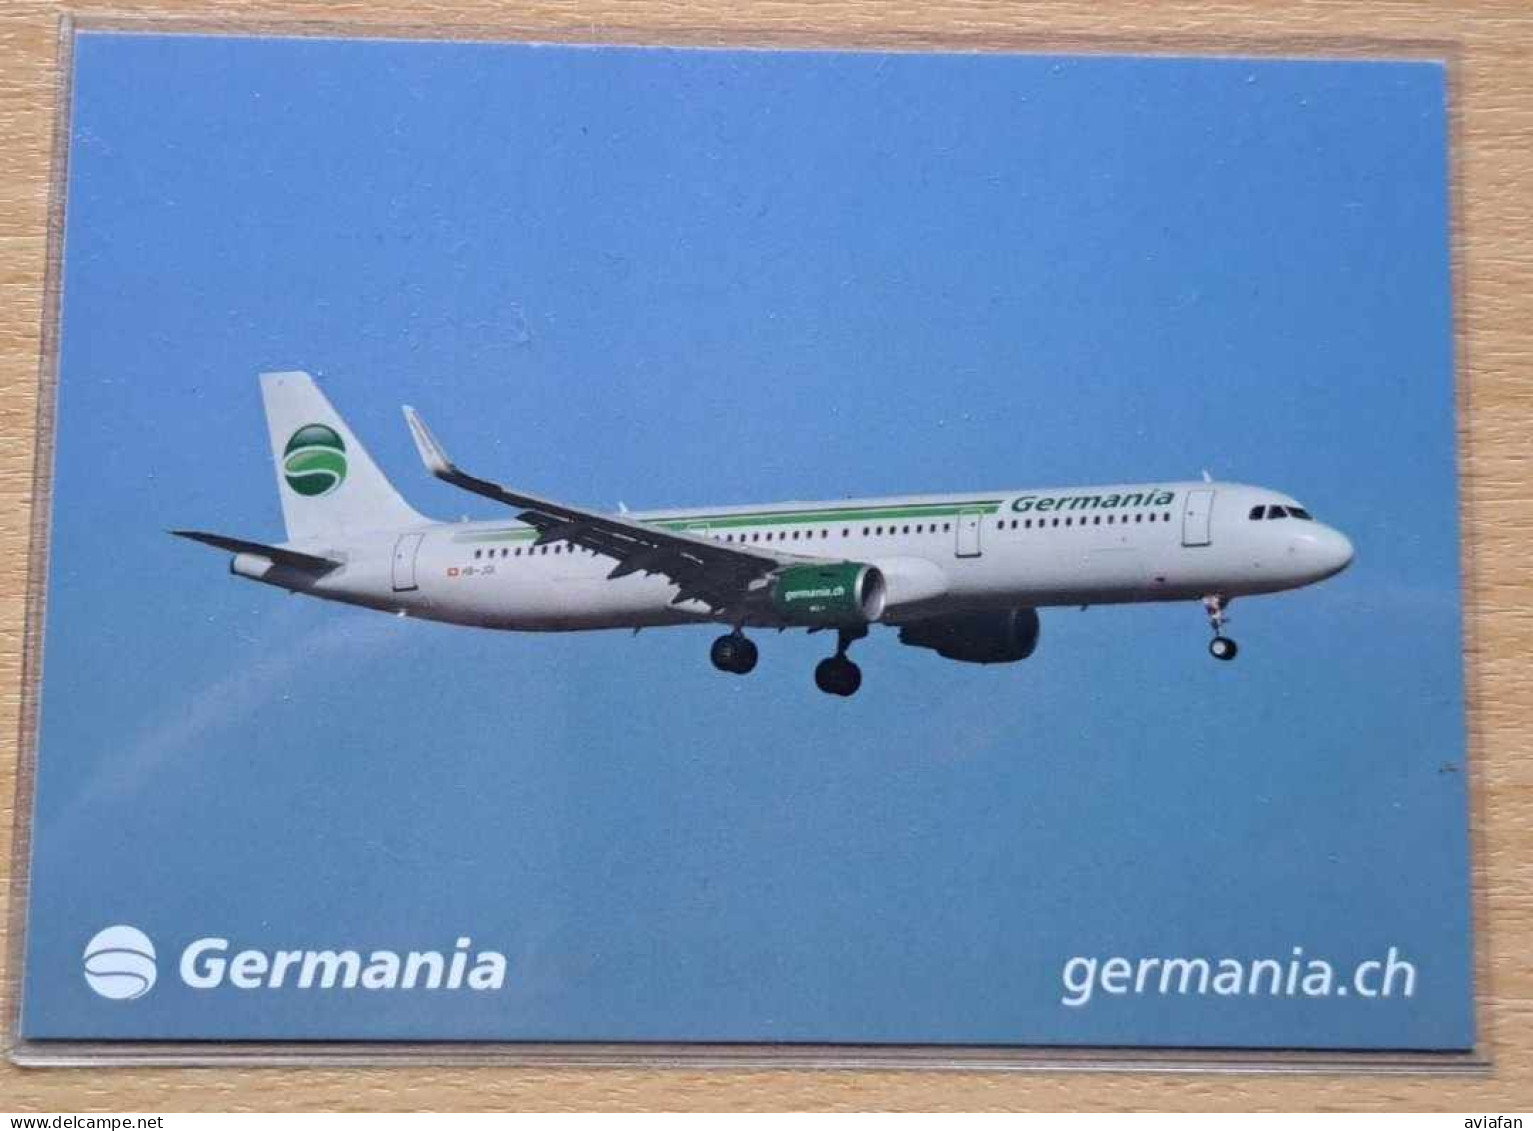 GERMANIA Switzerland A321 Postcard - Airline Issue - 1946-....: Modern Era